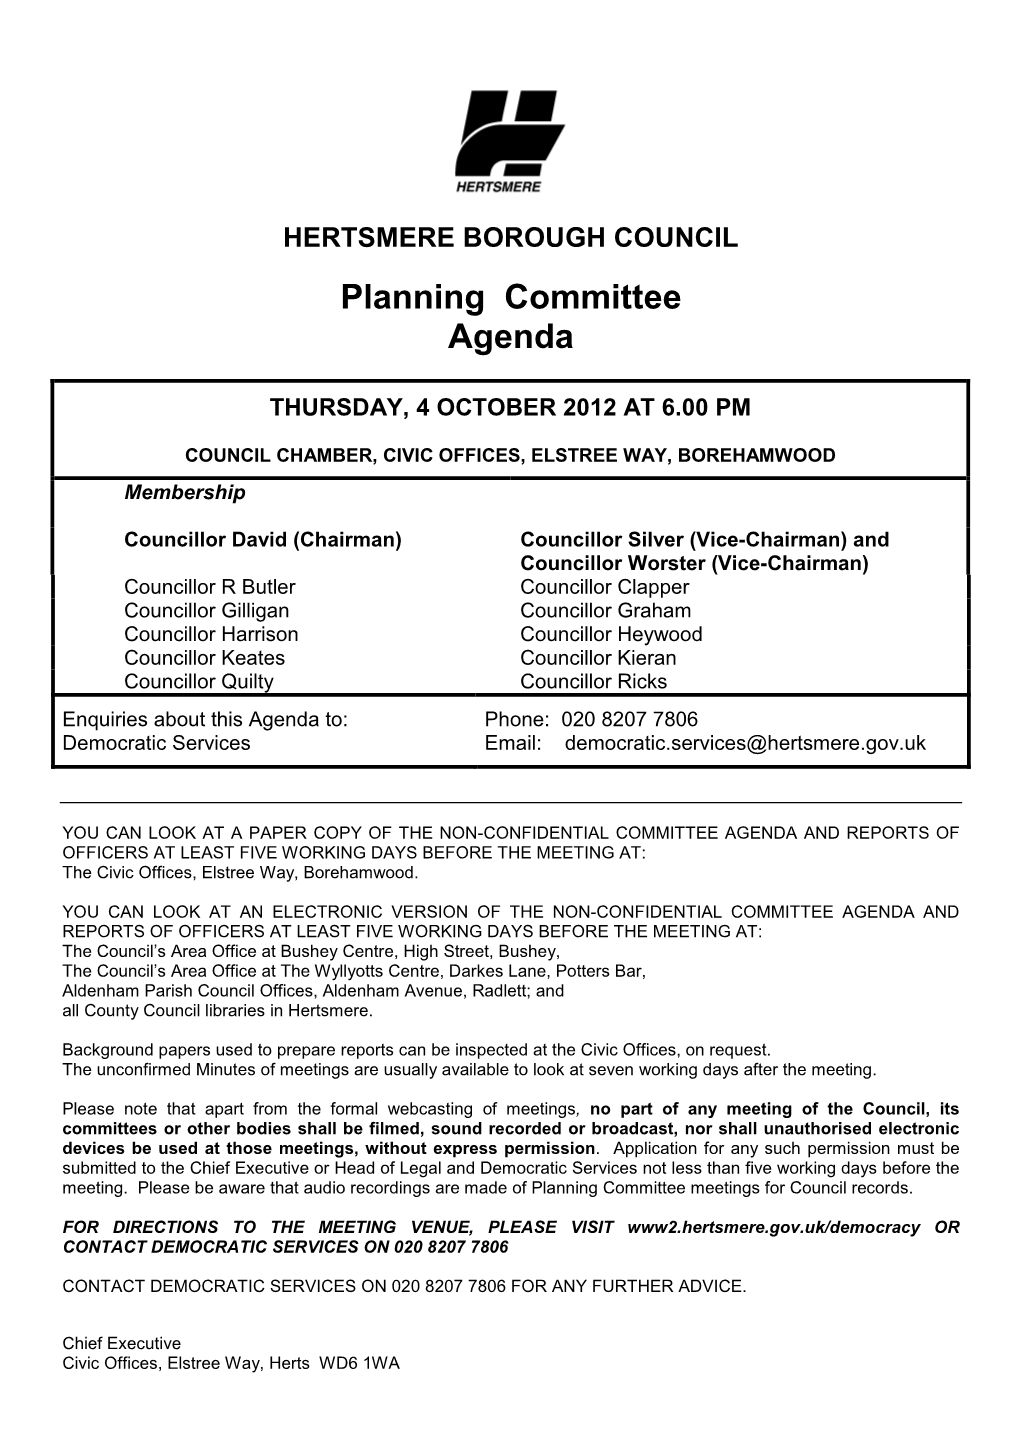 Planning Committee Agenda 4 October 2012